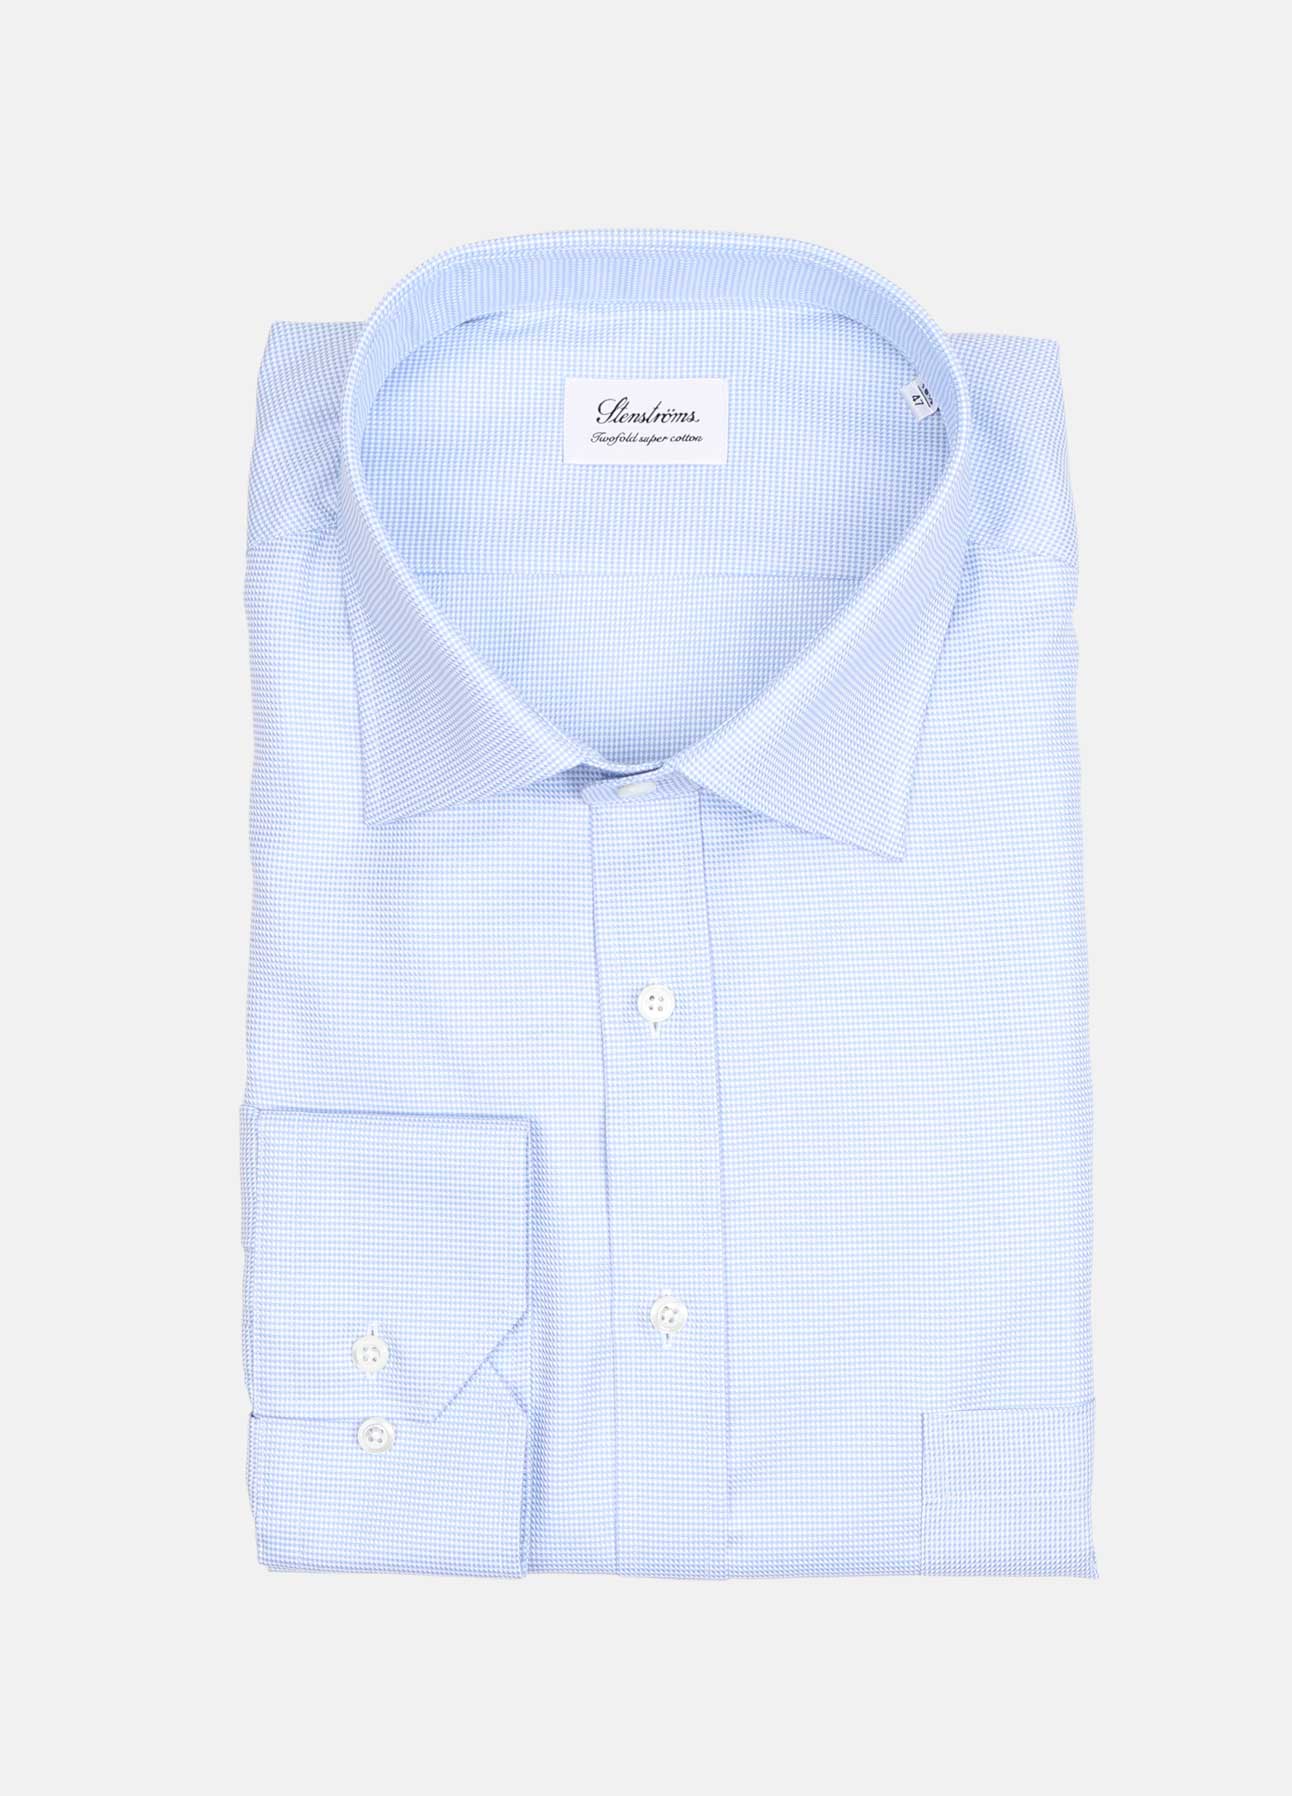 Business skjorter skjorter 3XL+ | Online